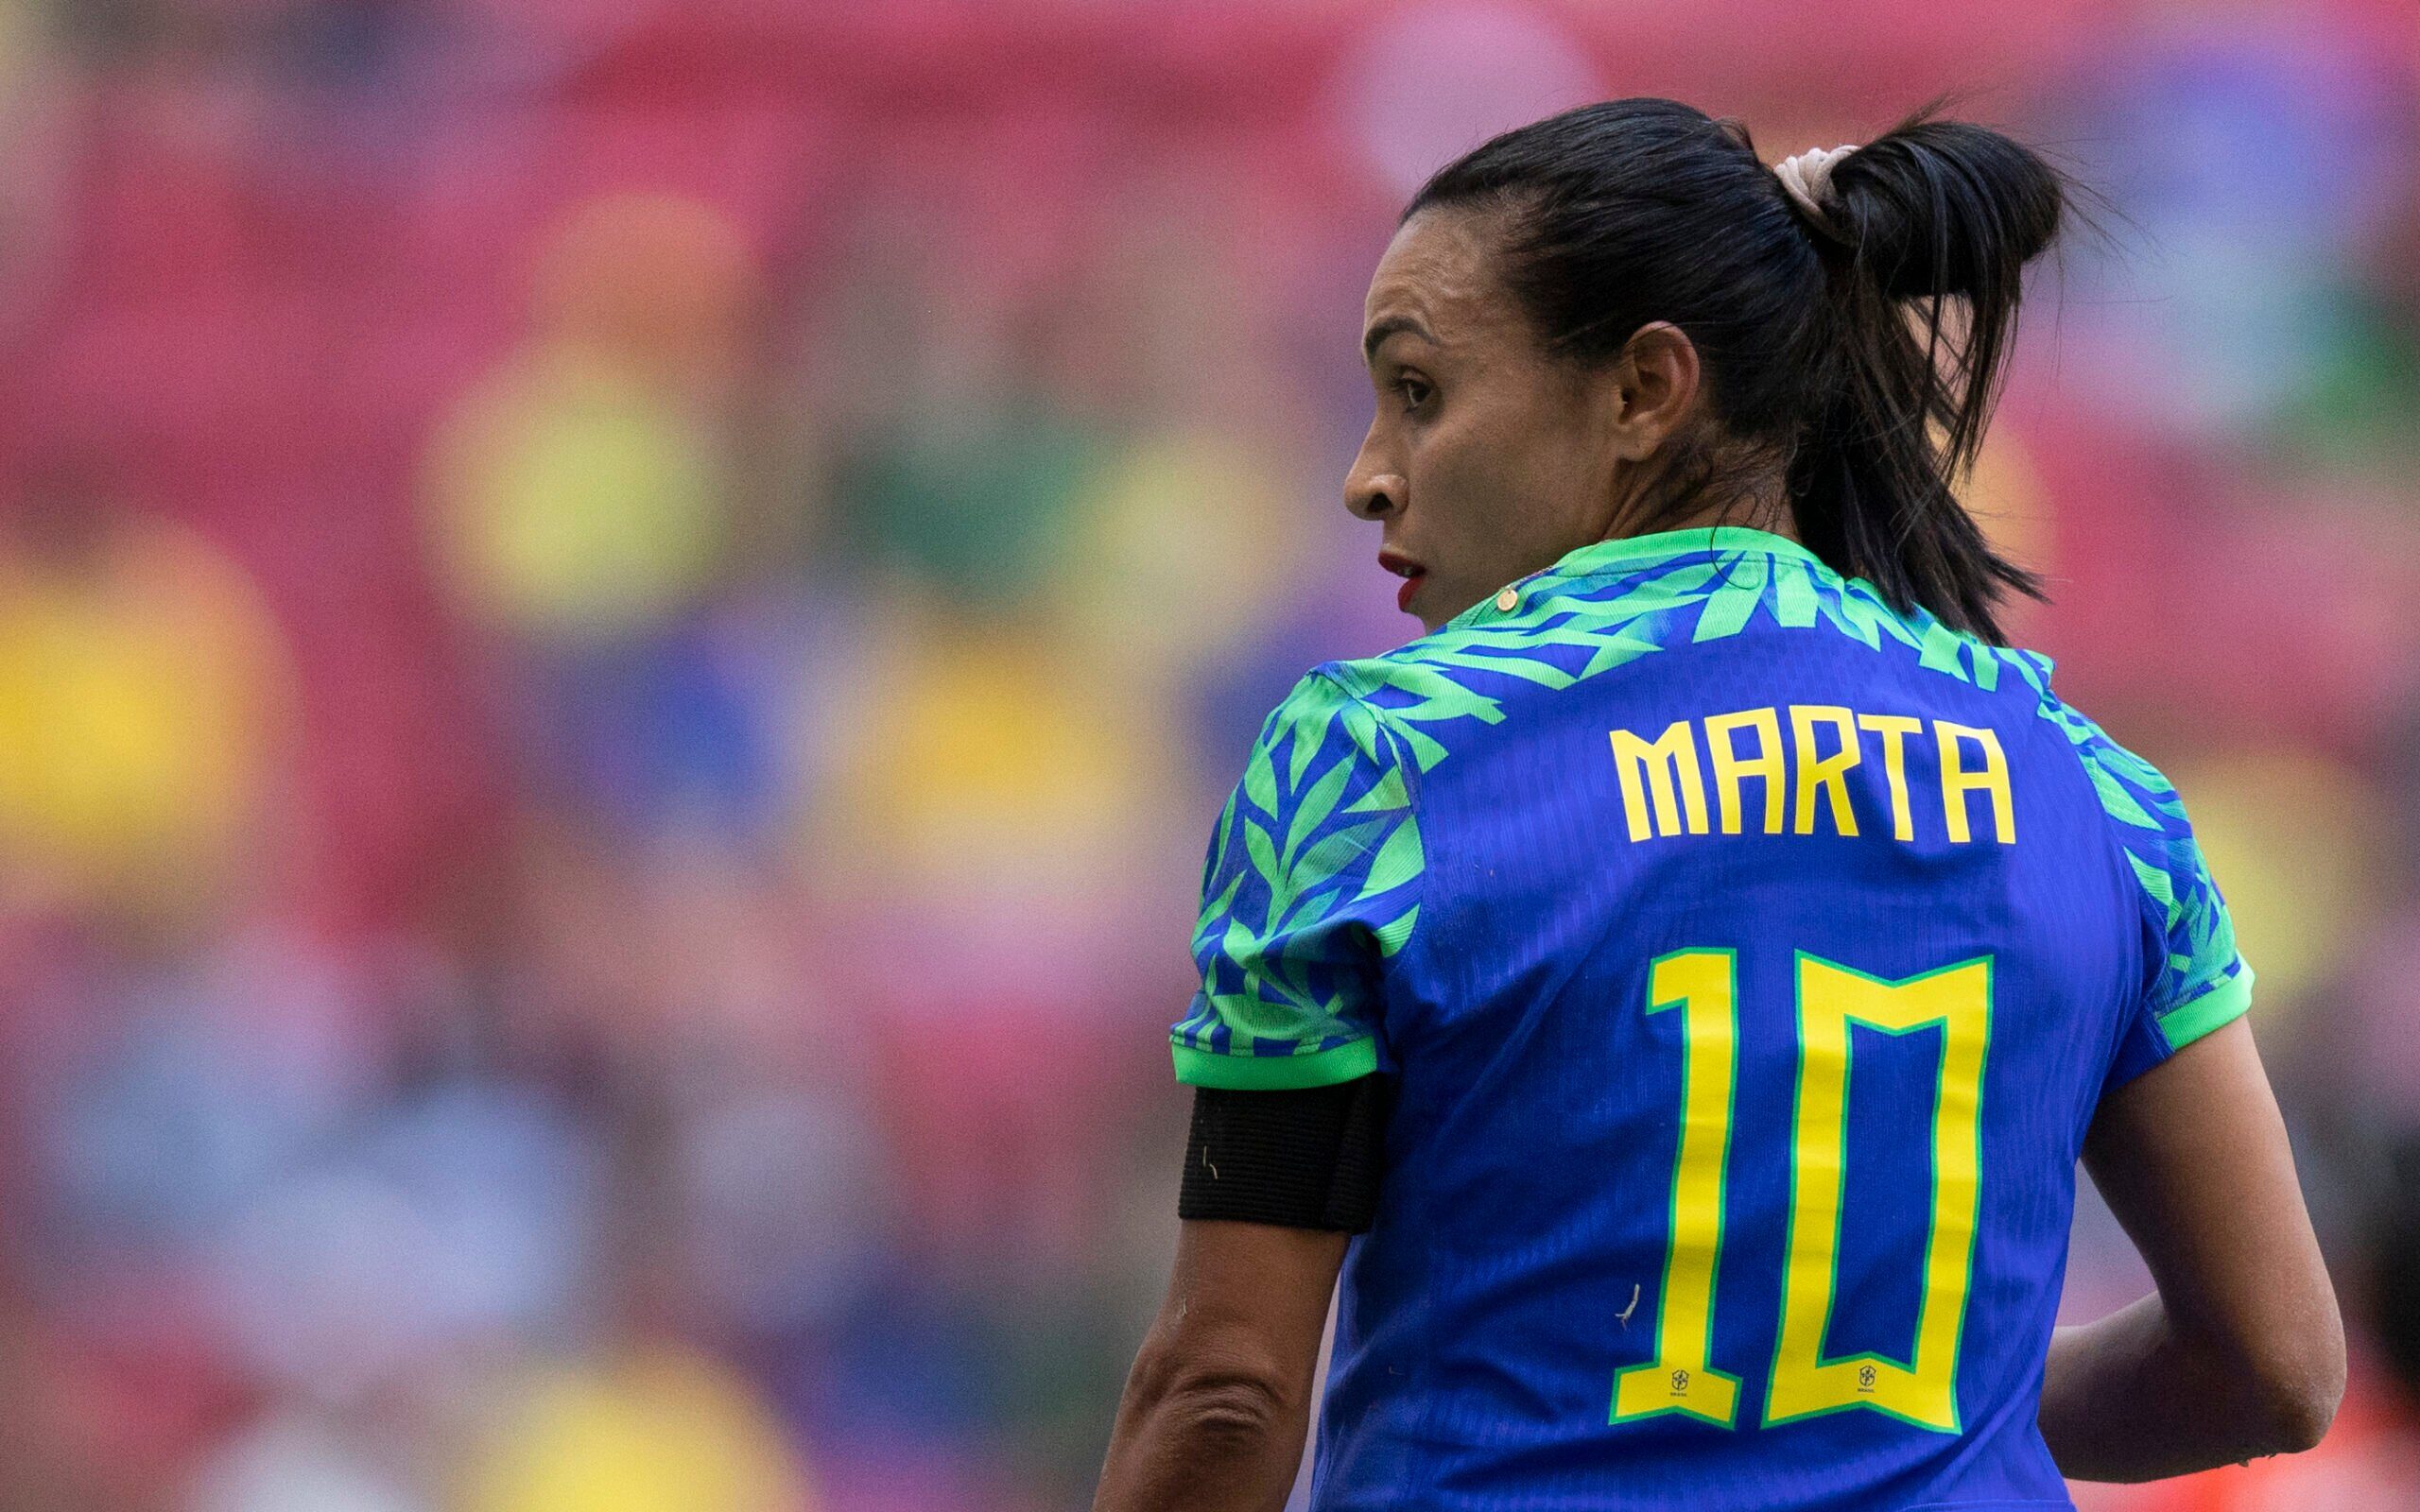 Por que a seleção brasileira feminina jogará sem as estrelas na camisa?